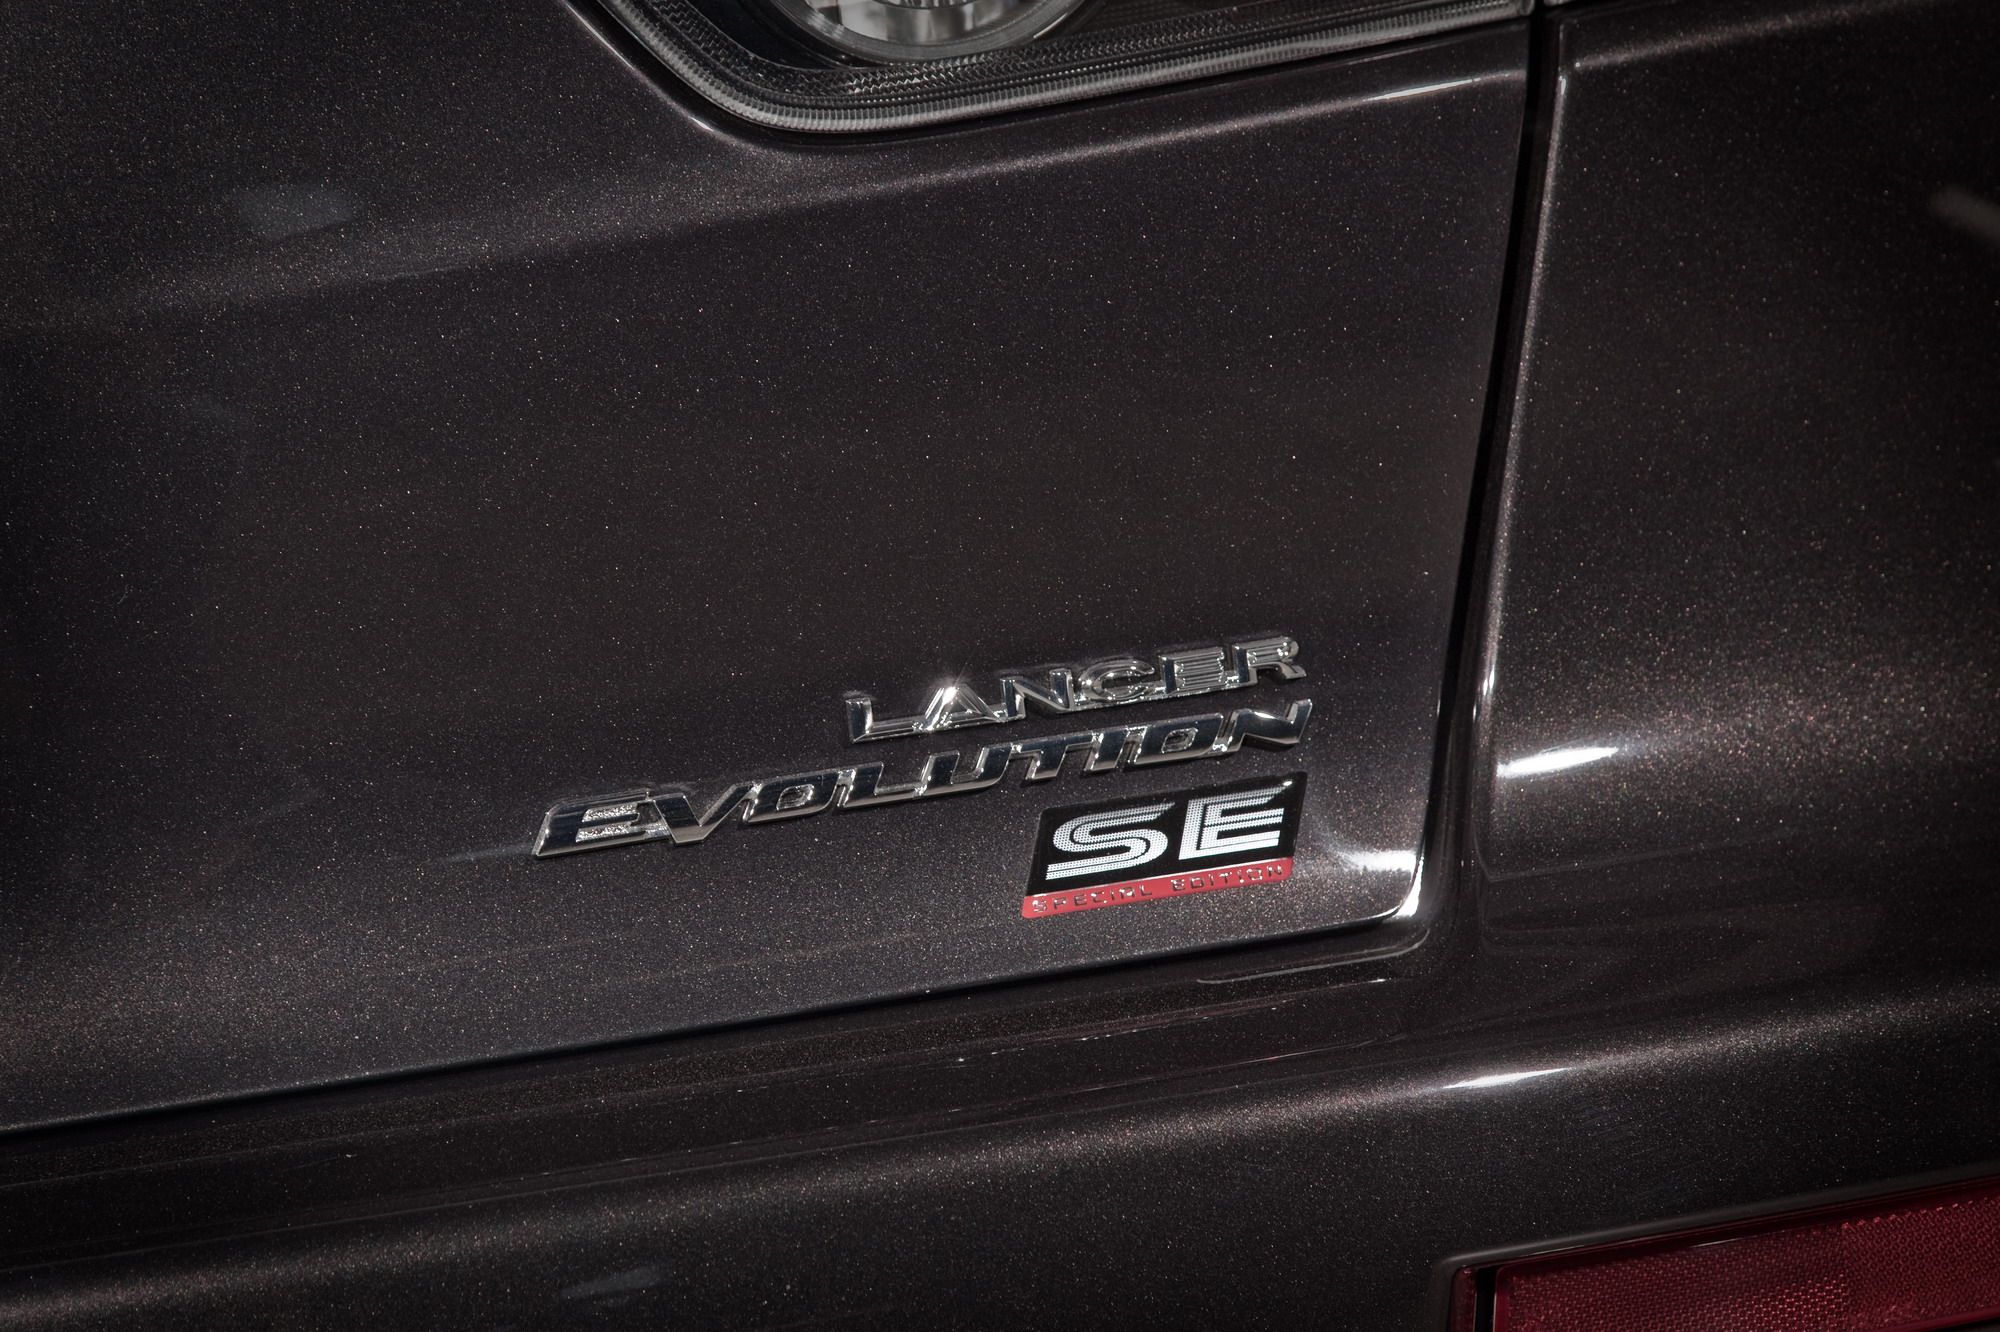 2011 Mitsubishi Lancer Evolution SE